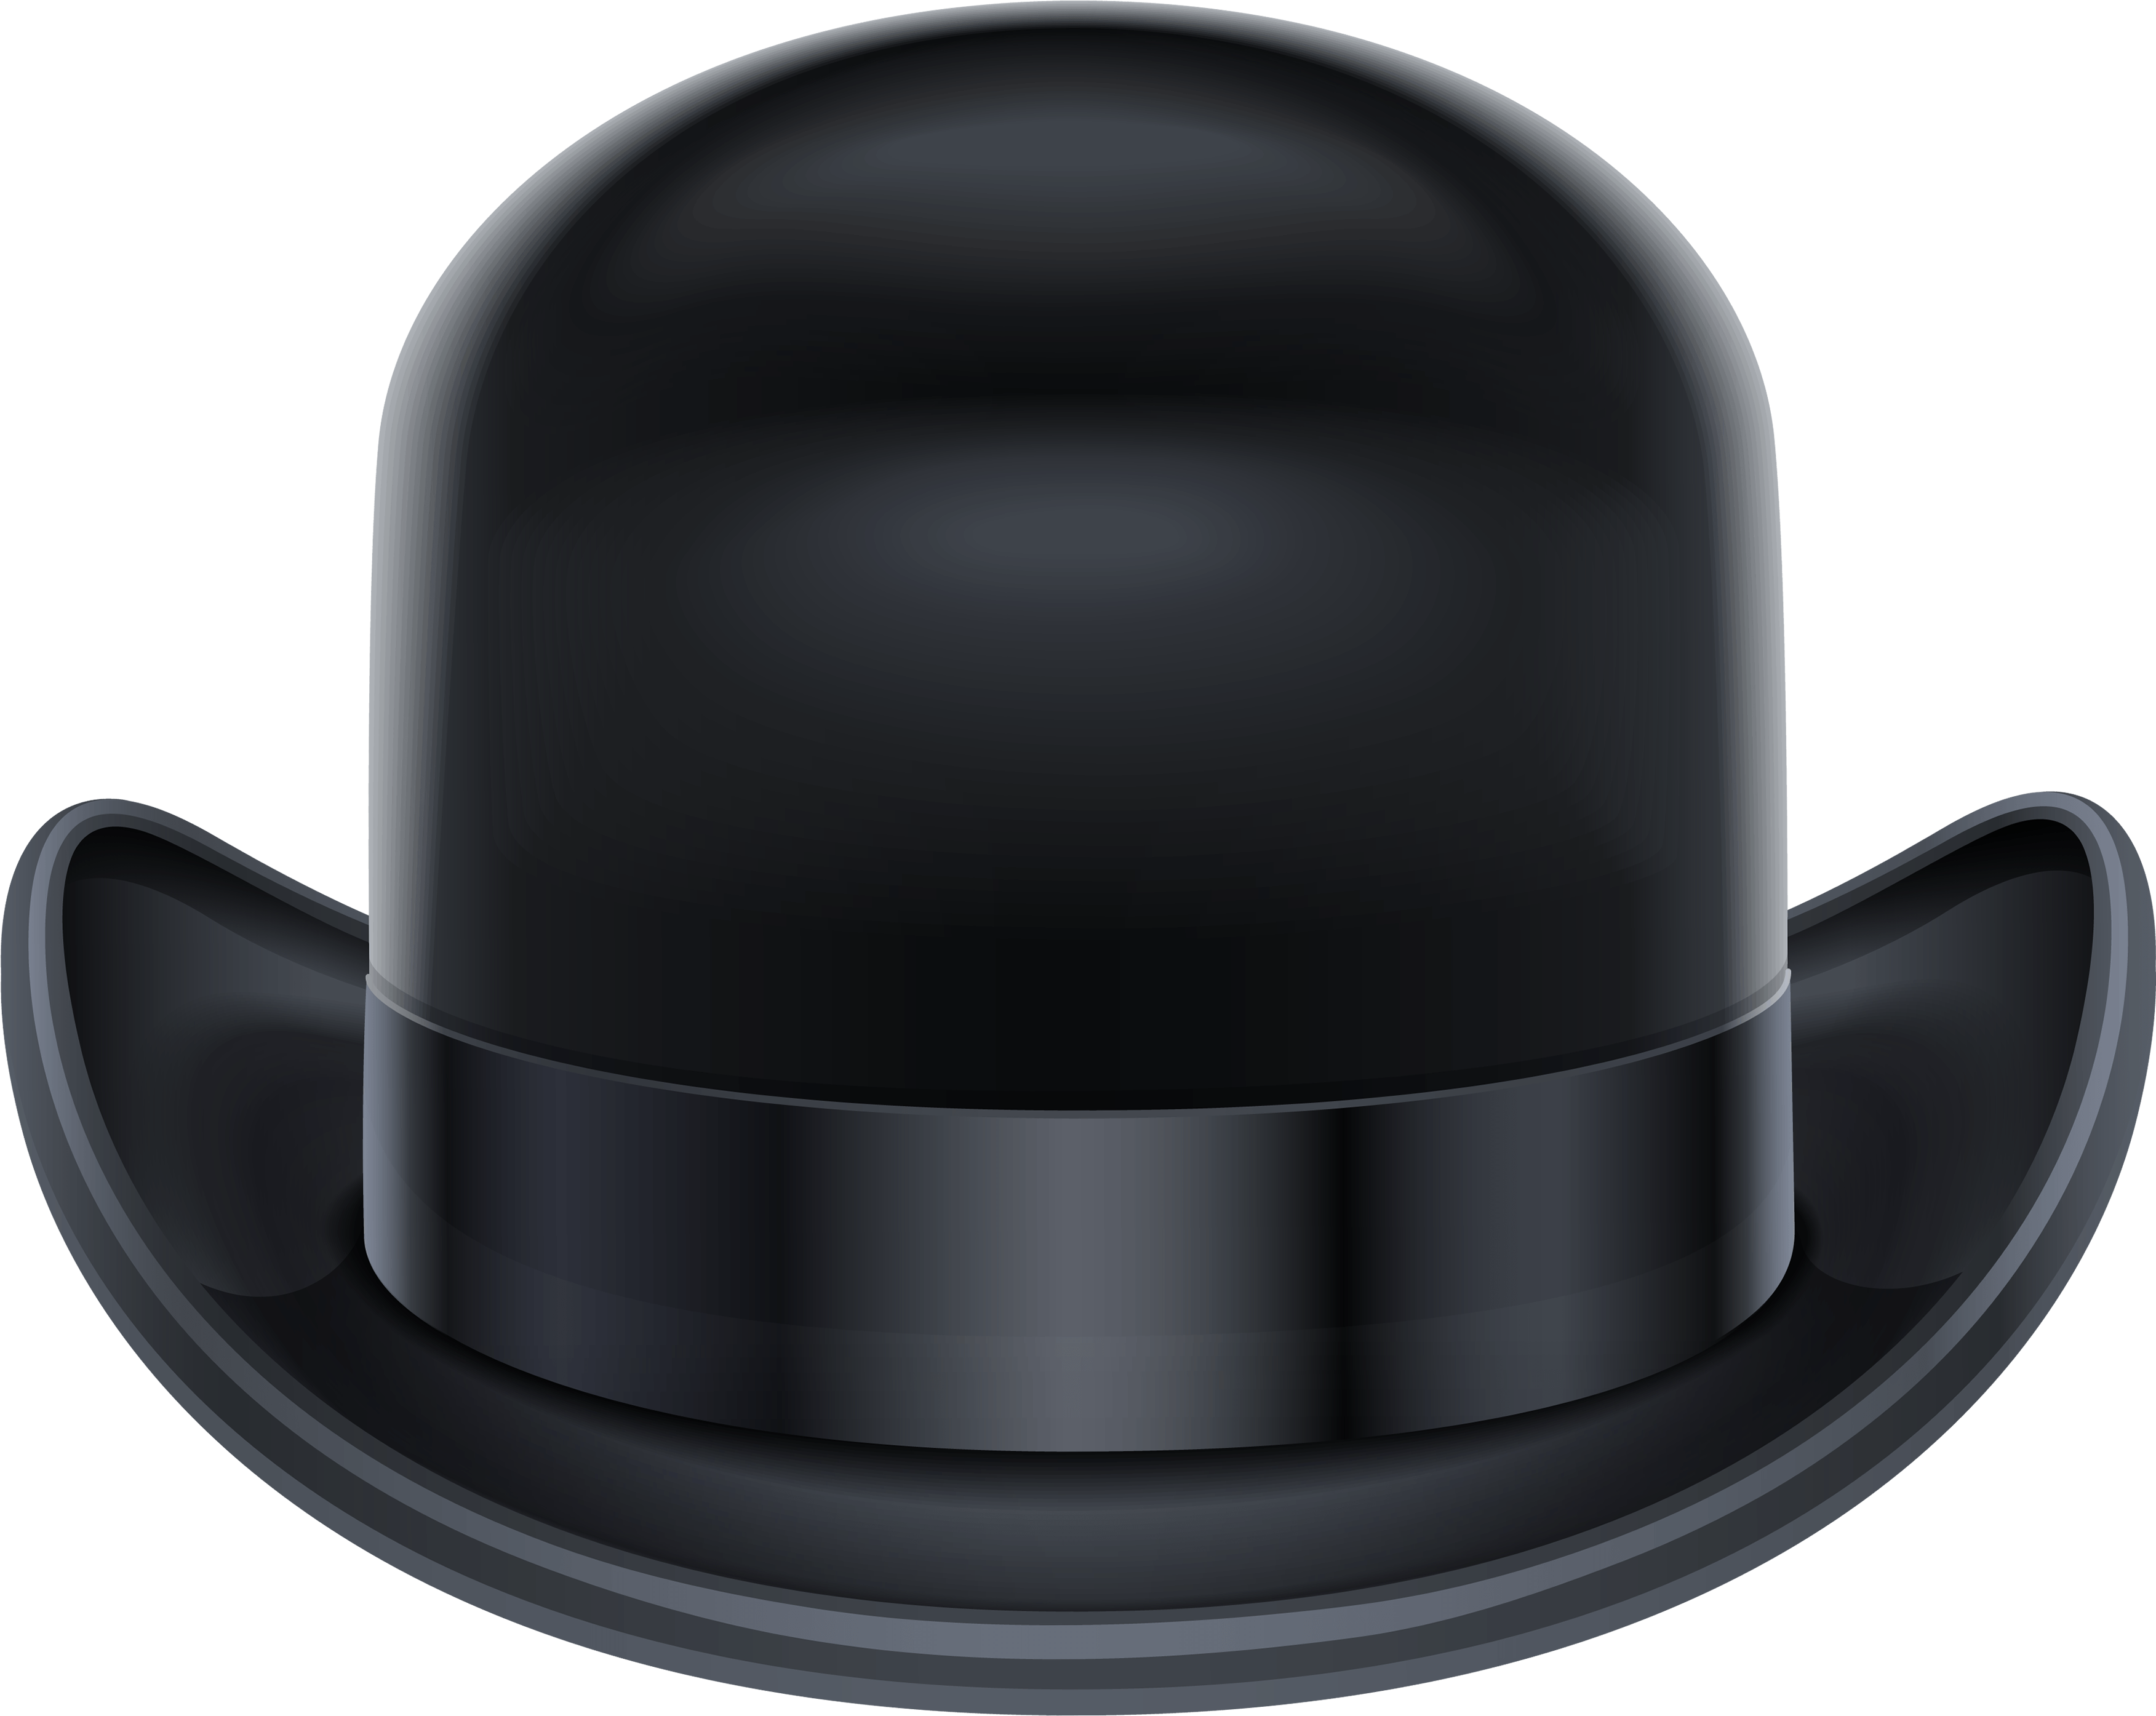 Download Black Hat Png Image HQ PNG Image FreePNGImg.